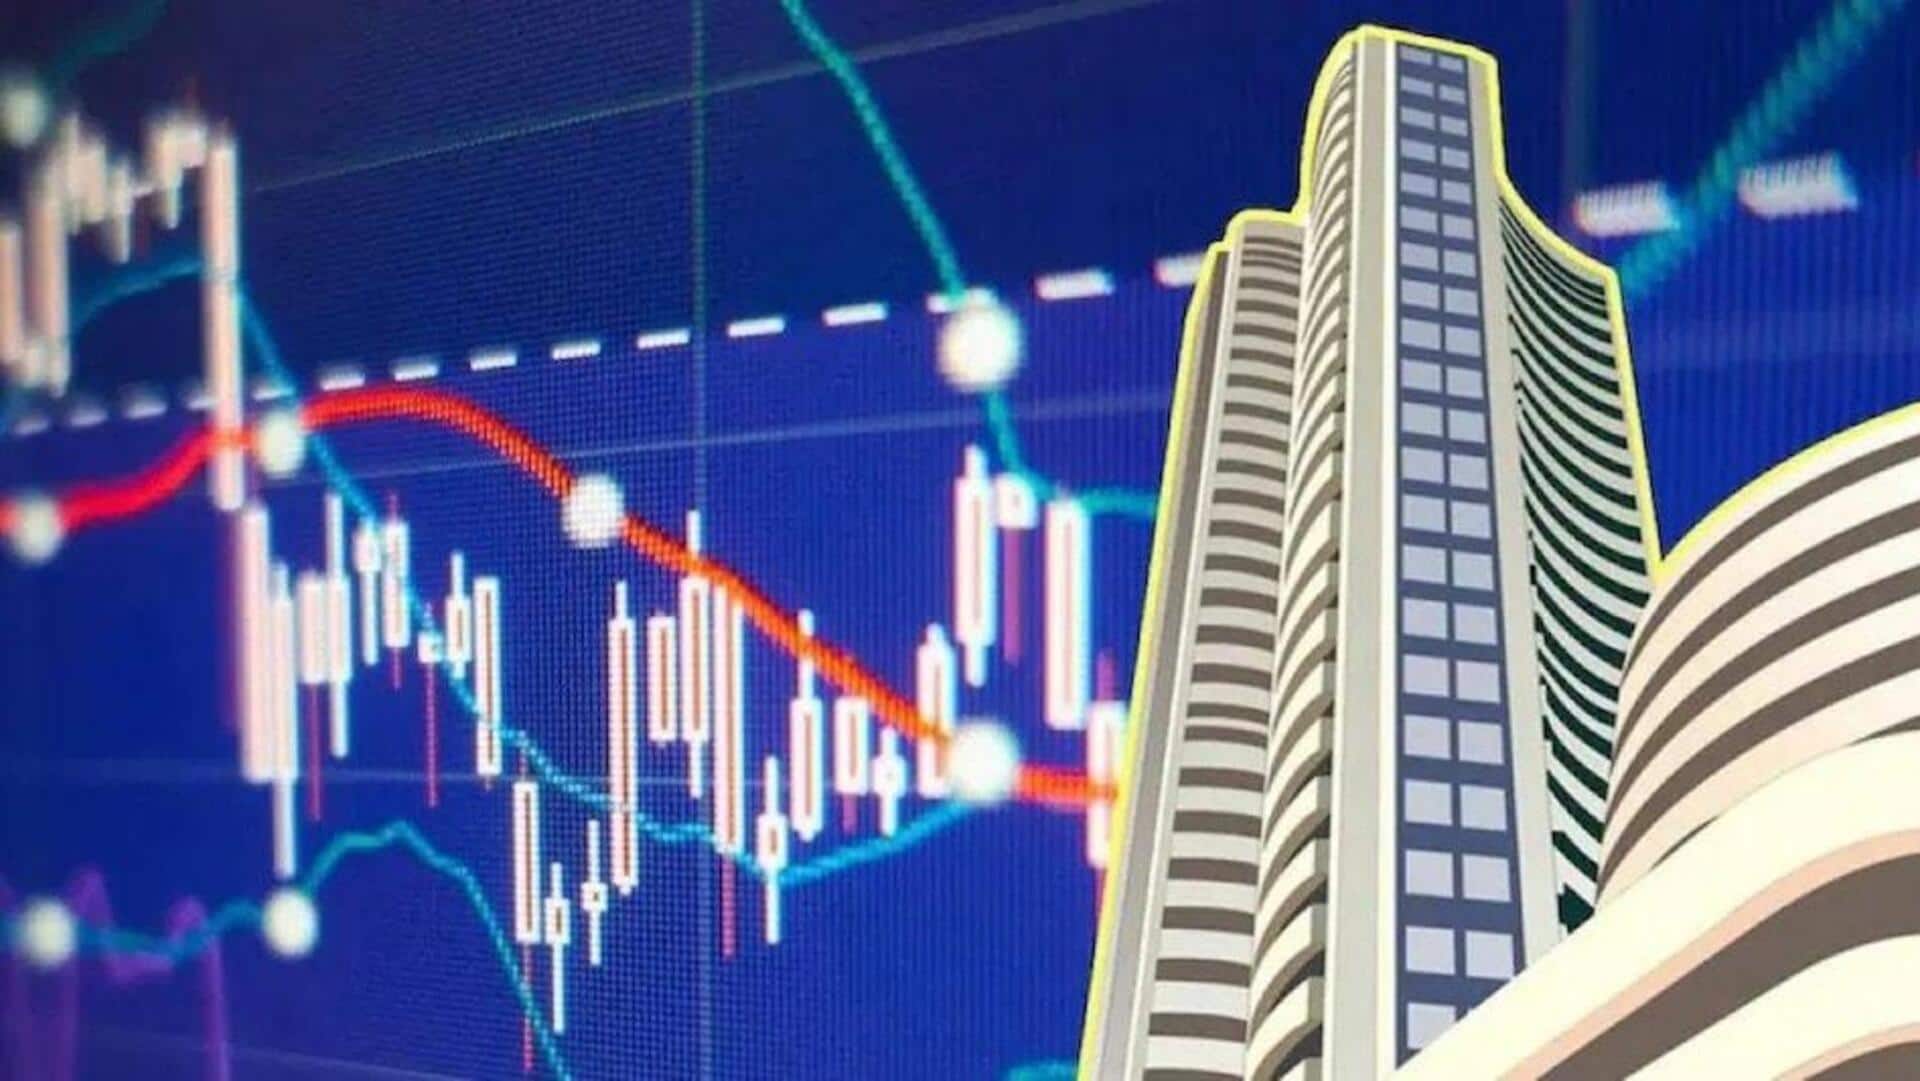 Sensex closes flat near 74,250 mark, Nifty settles above 22,500